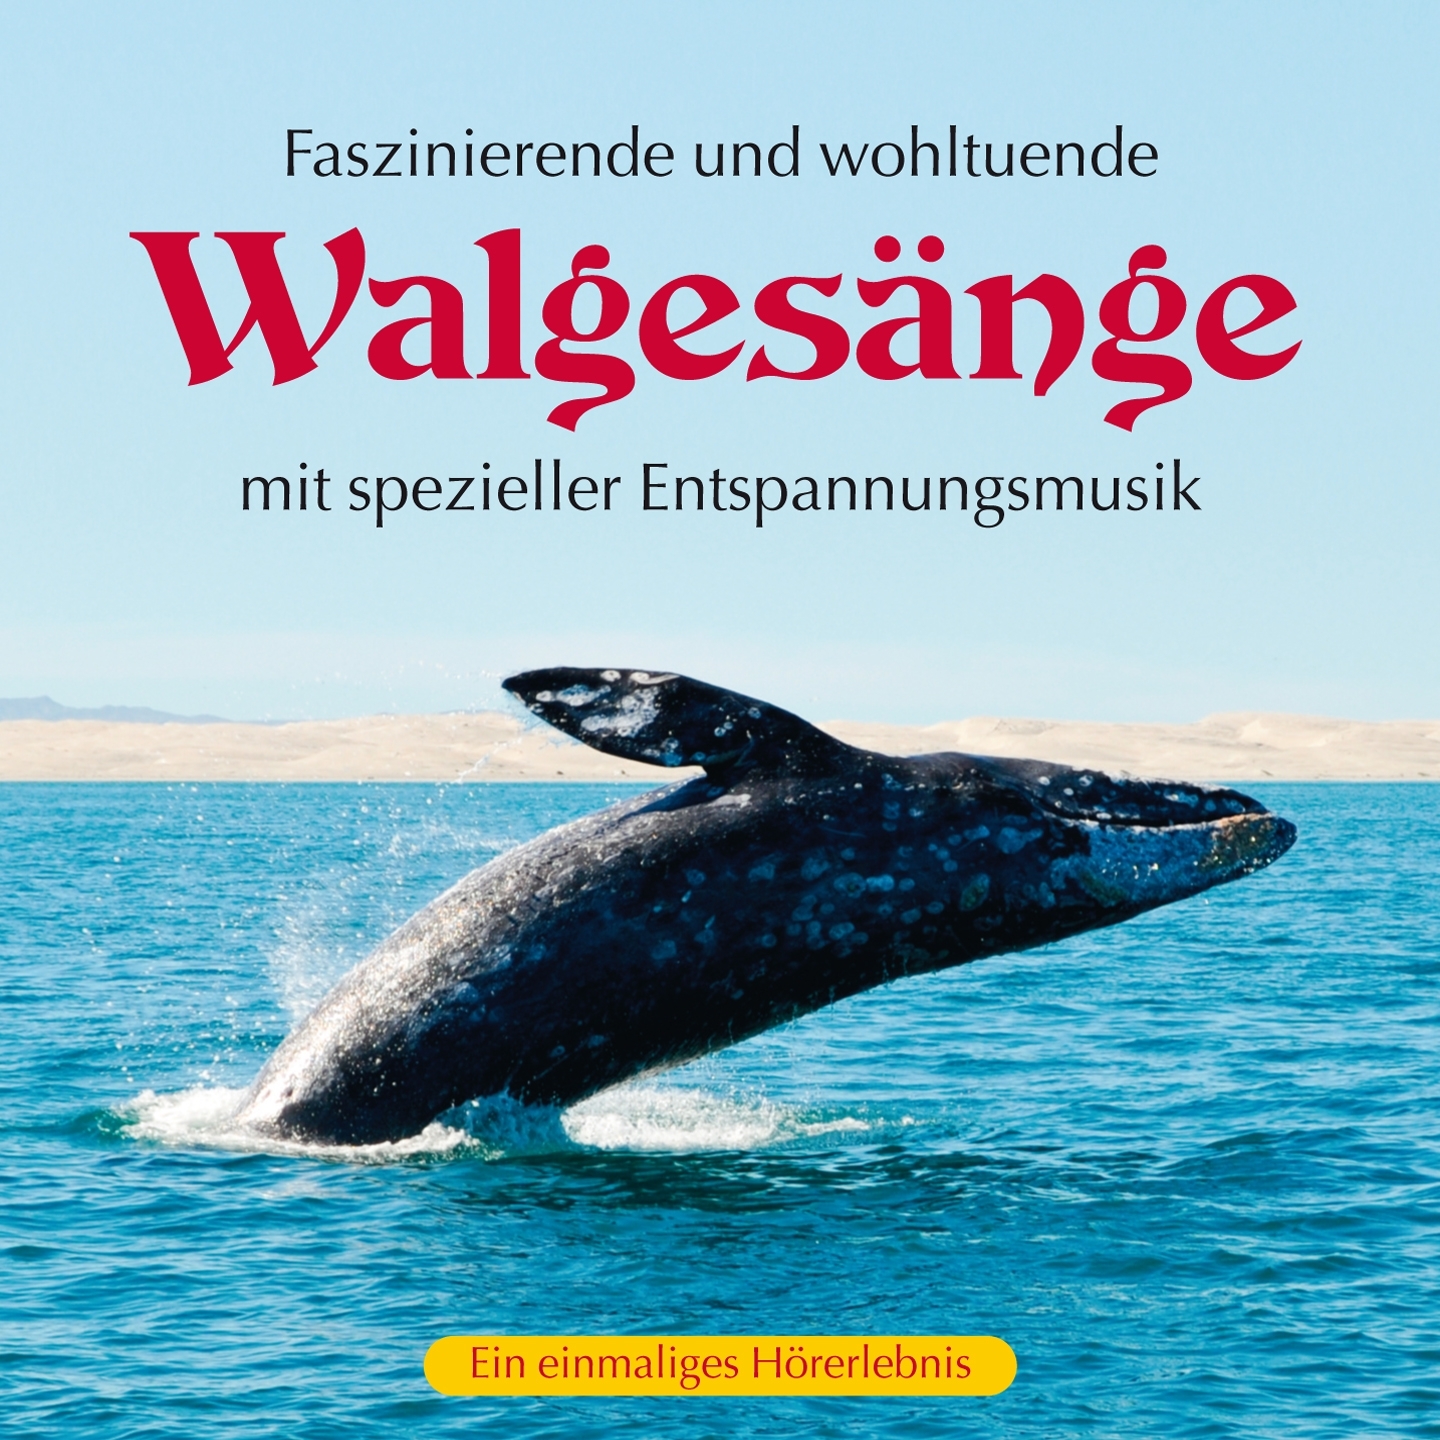 Die faszinierende Wanderschaft der Wale, Pt. 1